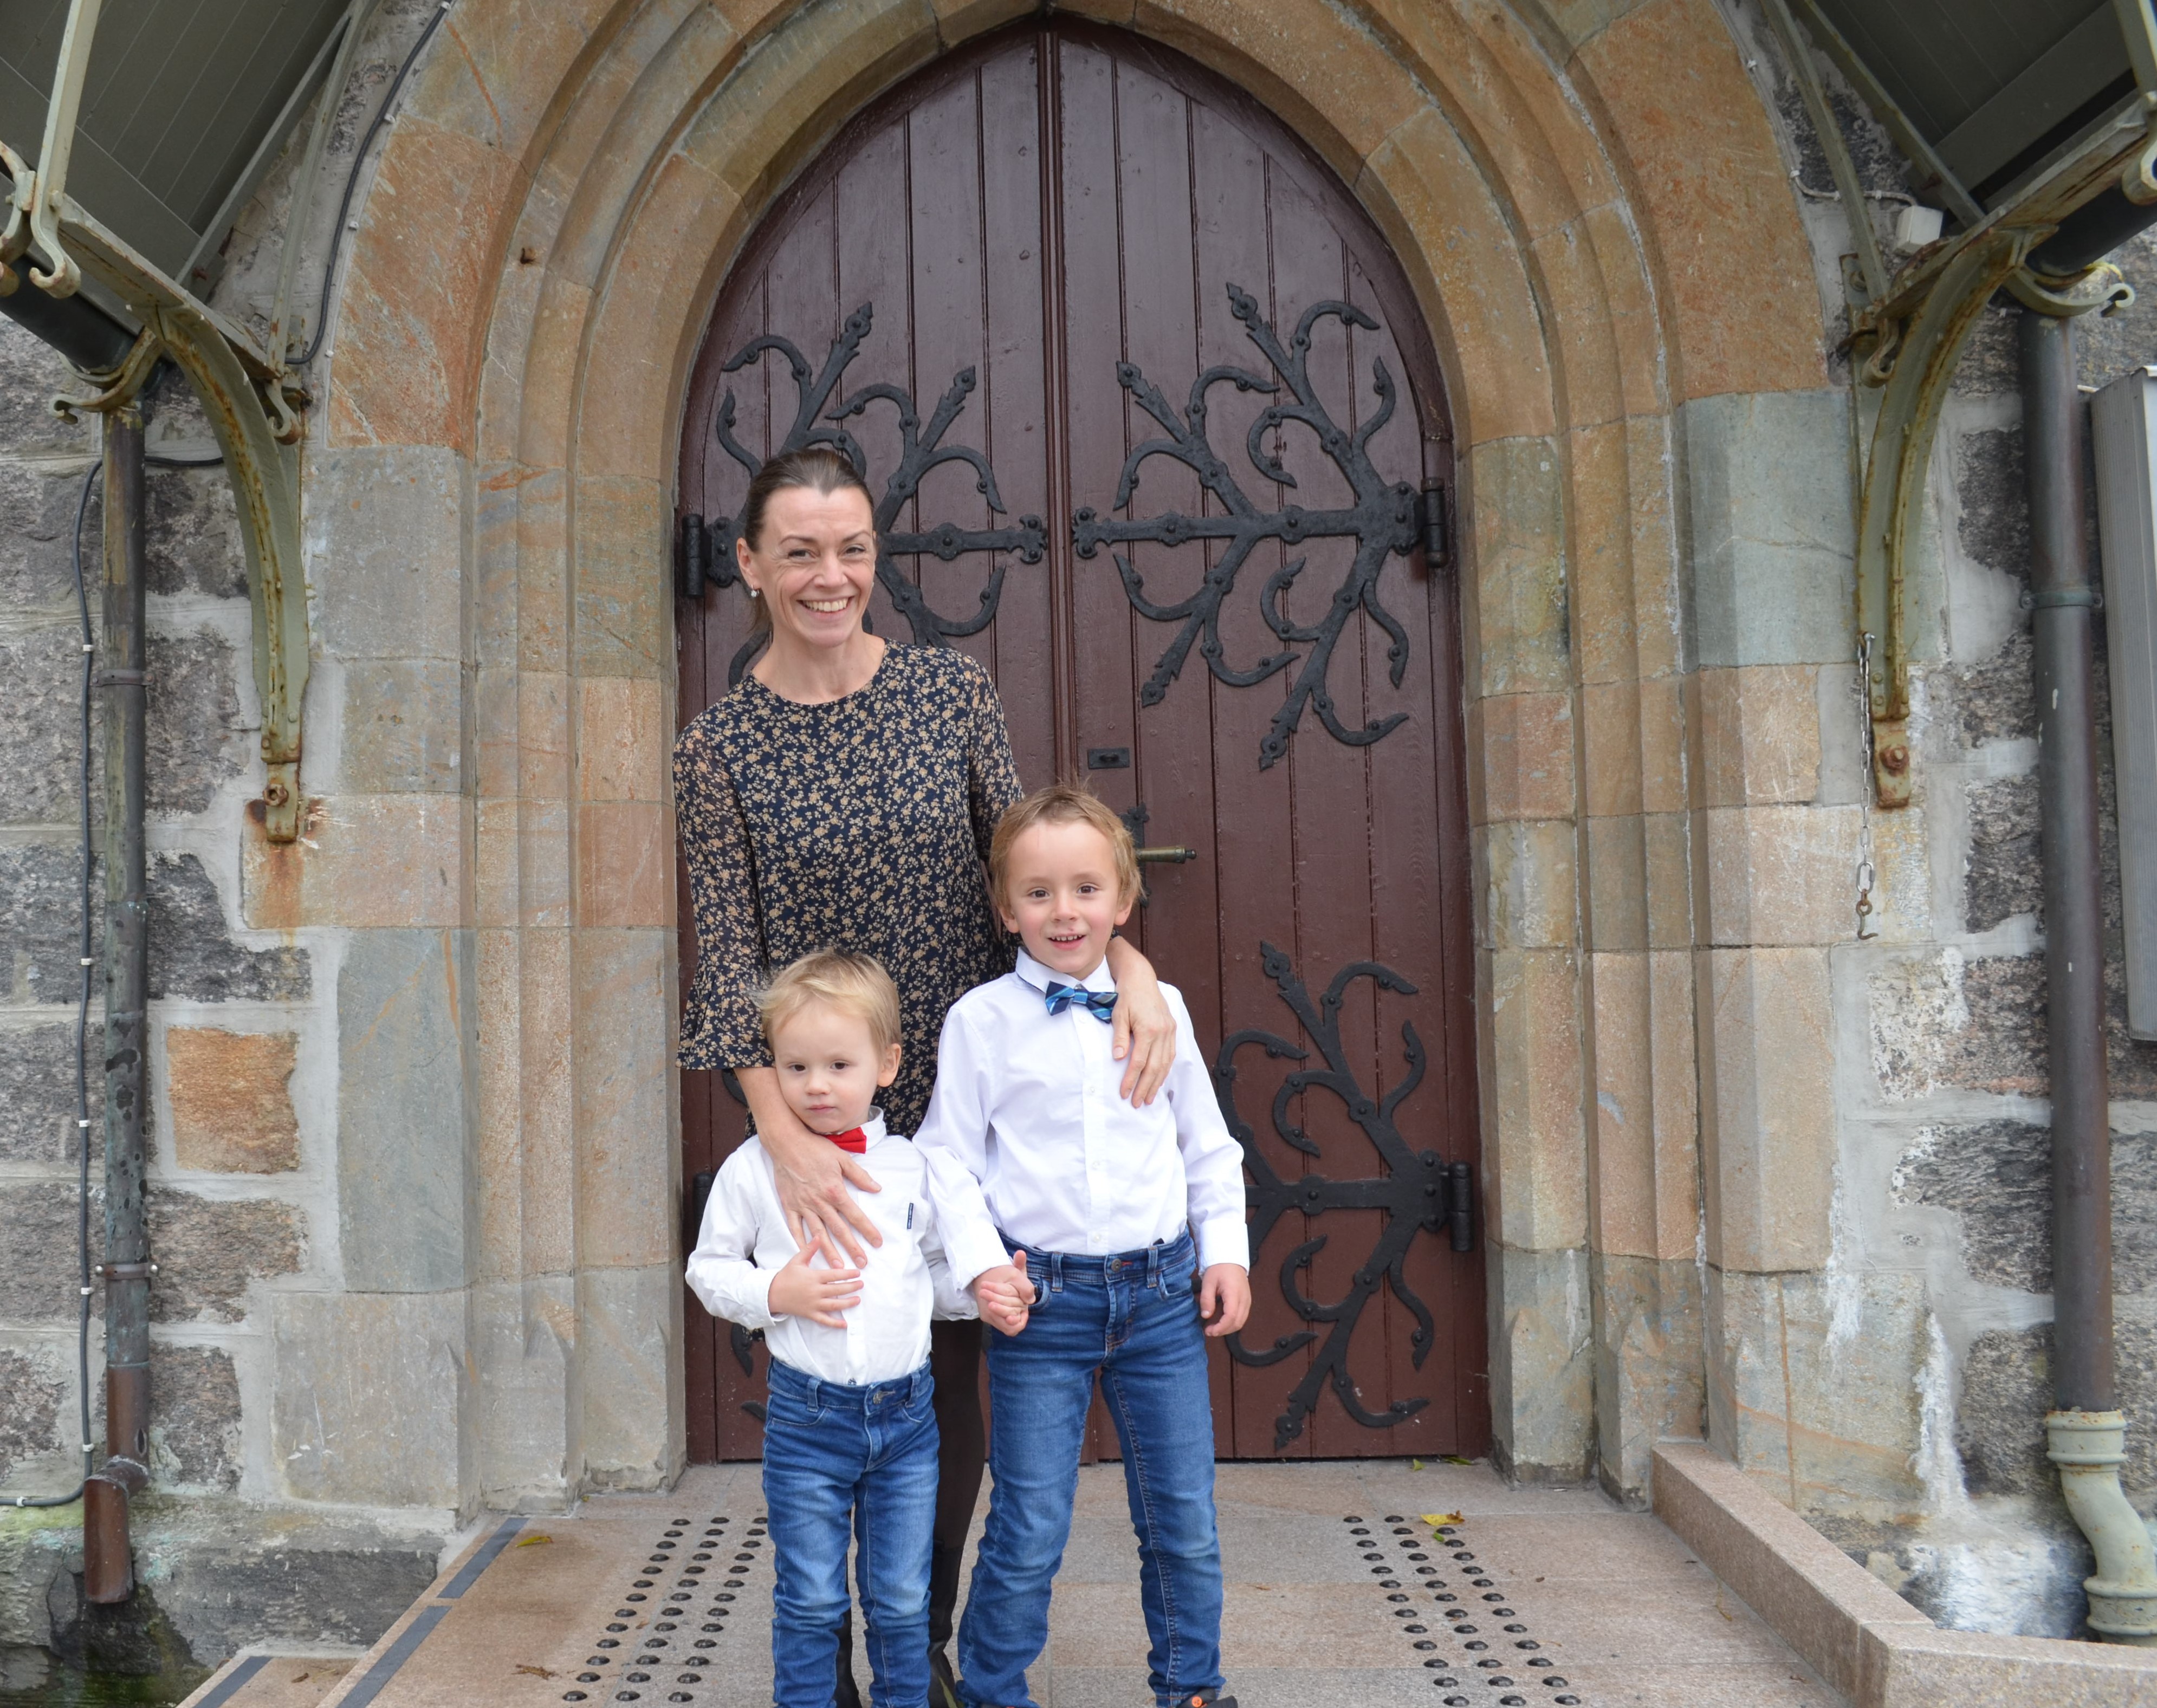 Dåpsfamilie drop-in-dåp
Elisabeth Fonnes, Bastian og Balder
Årstad kirke